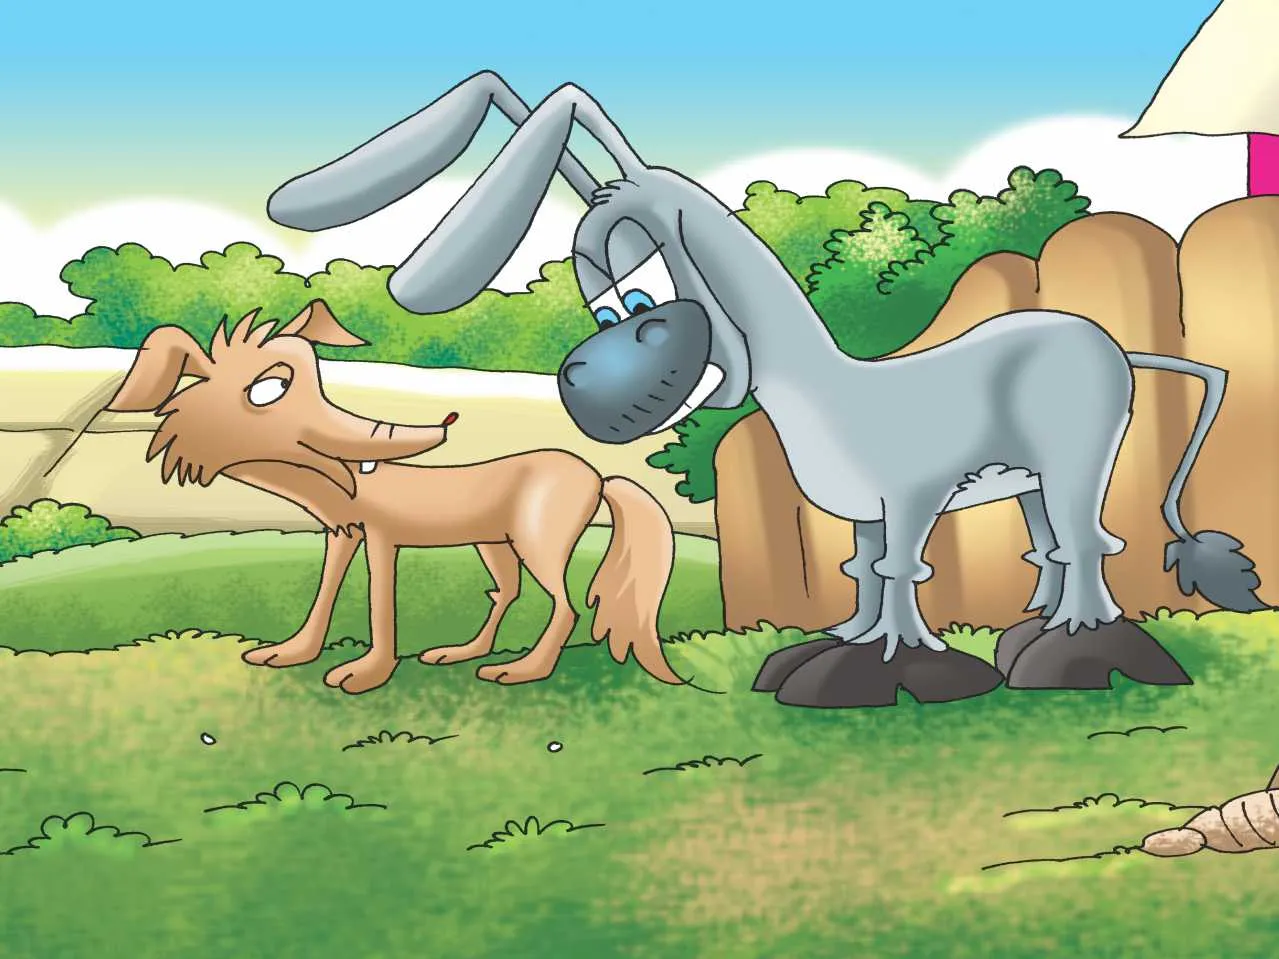 Donkey and jackal cartoon image